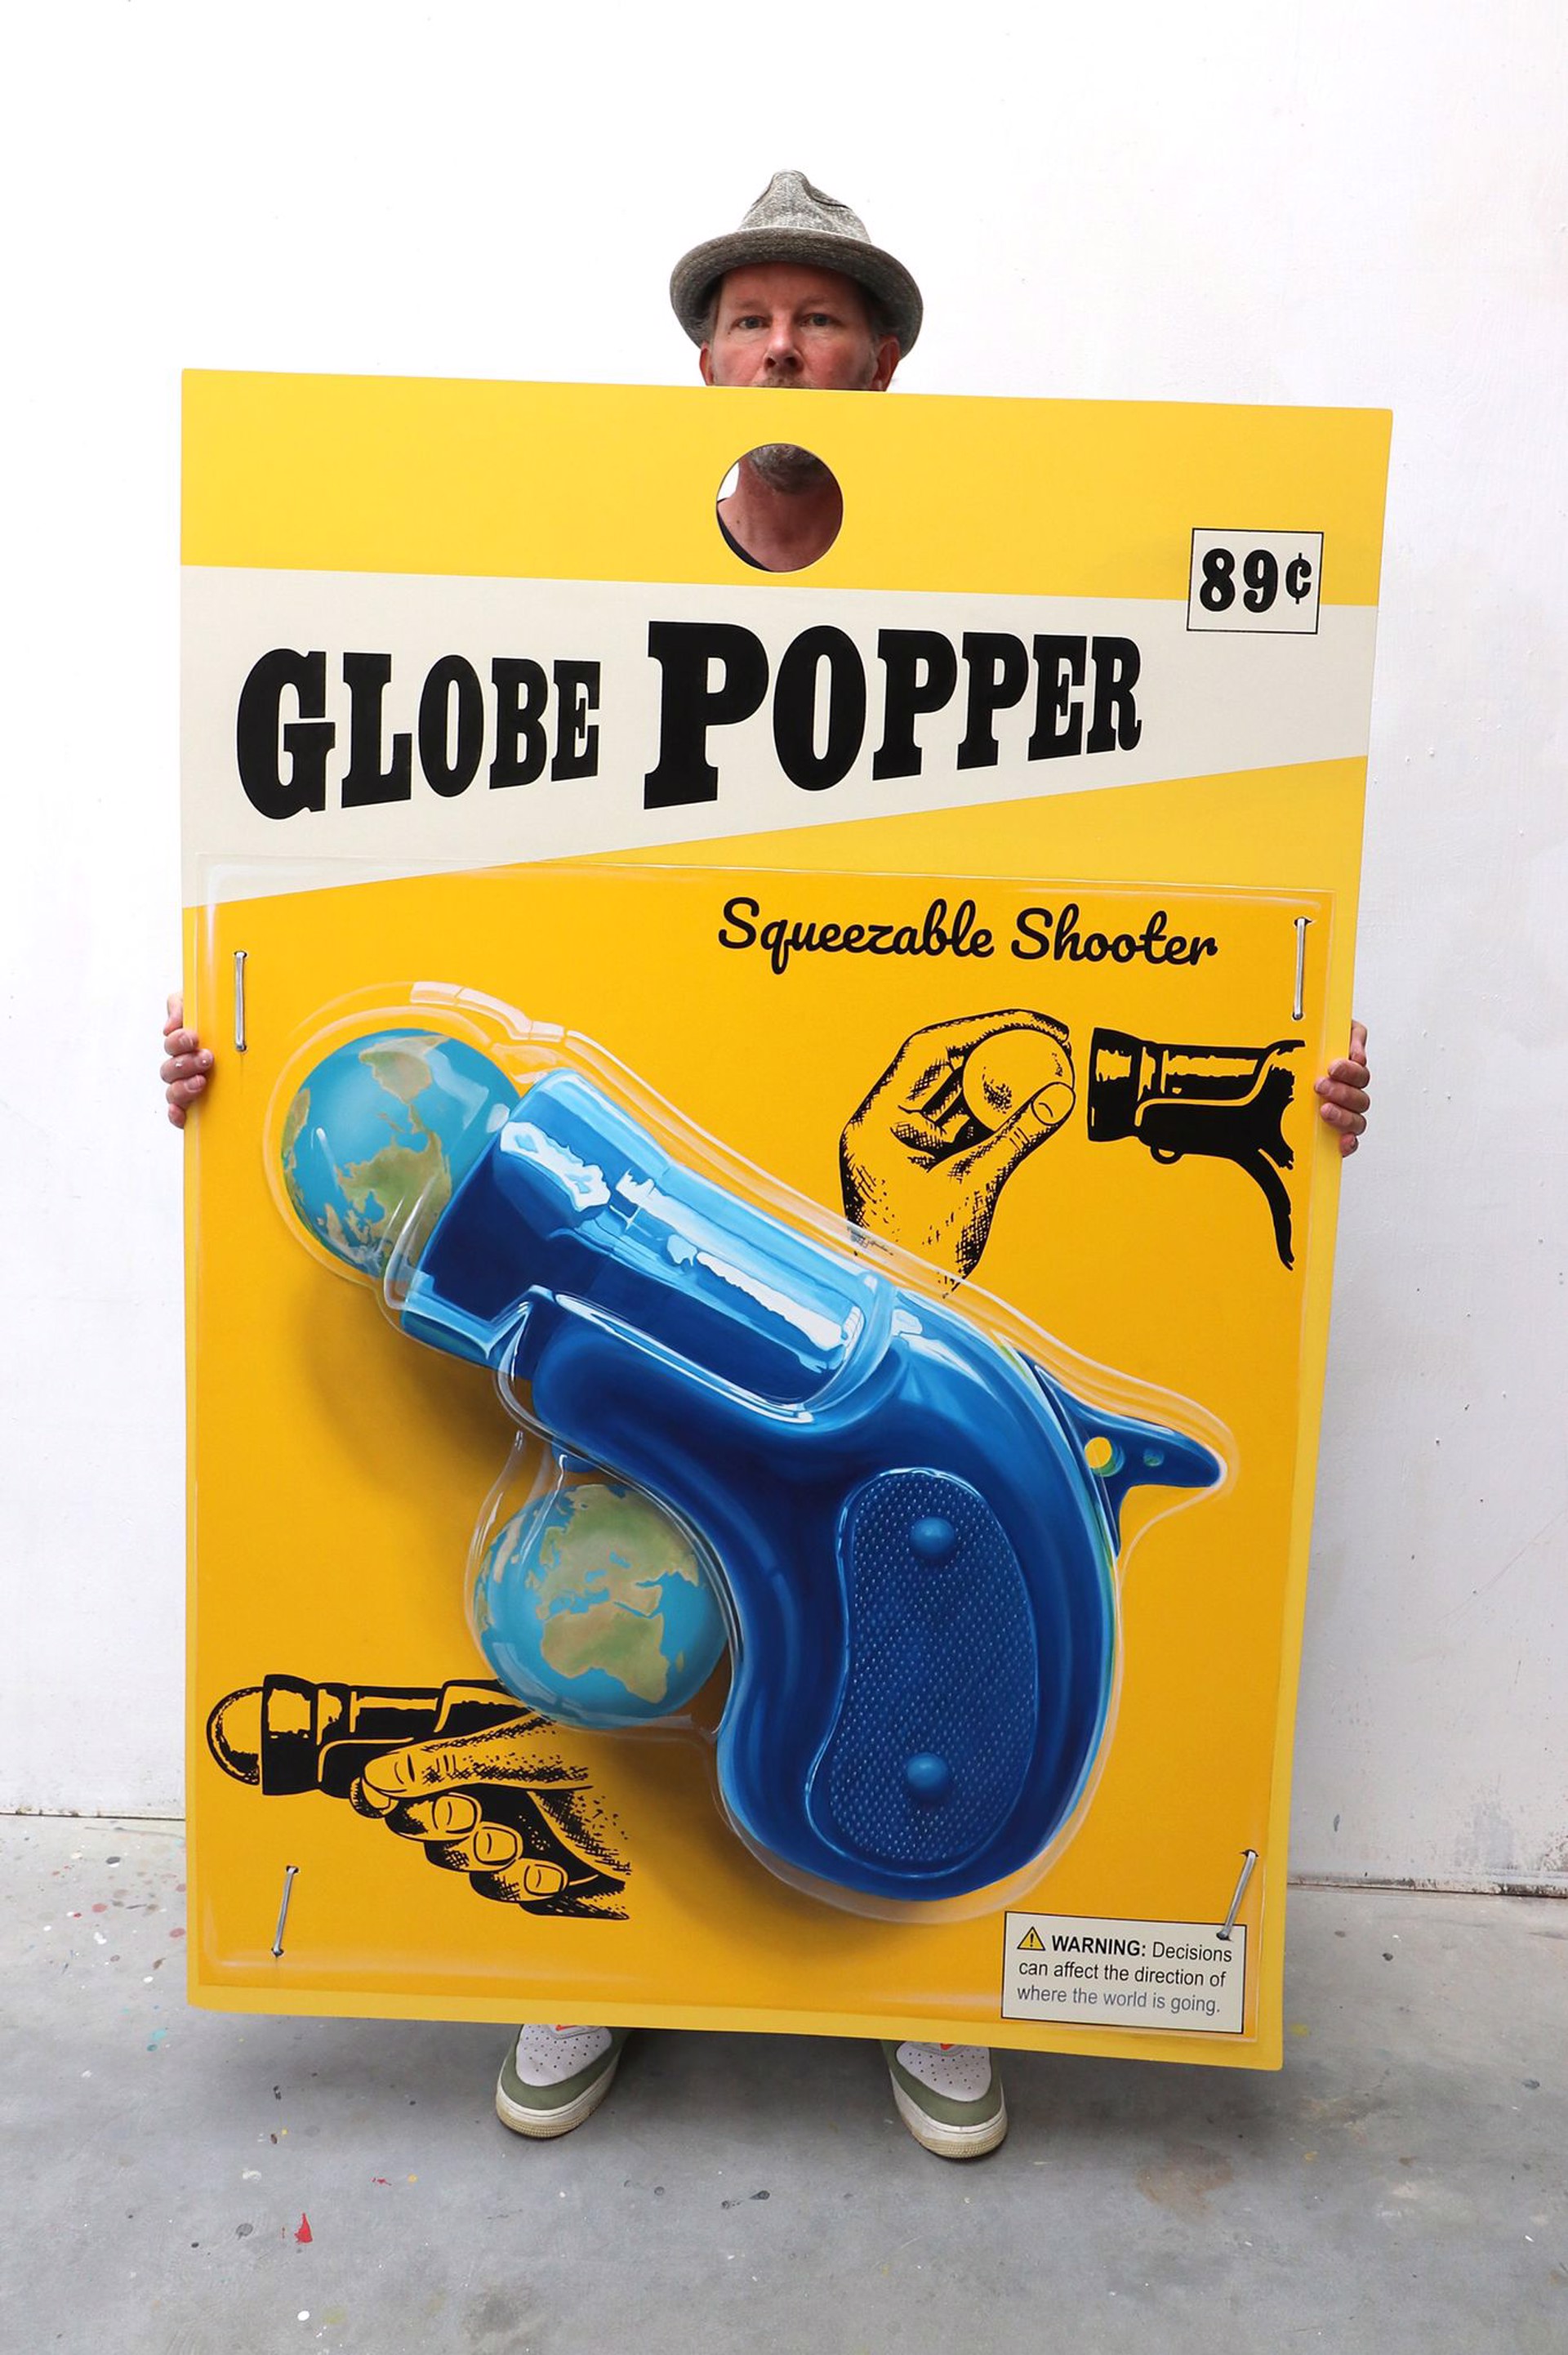 Globe Popper by Leon Keer